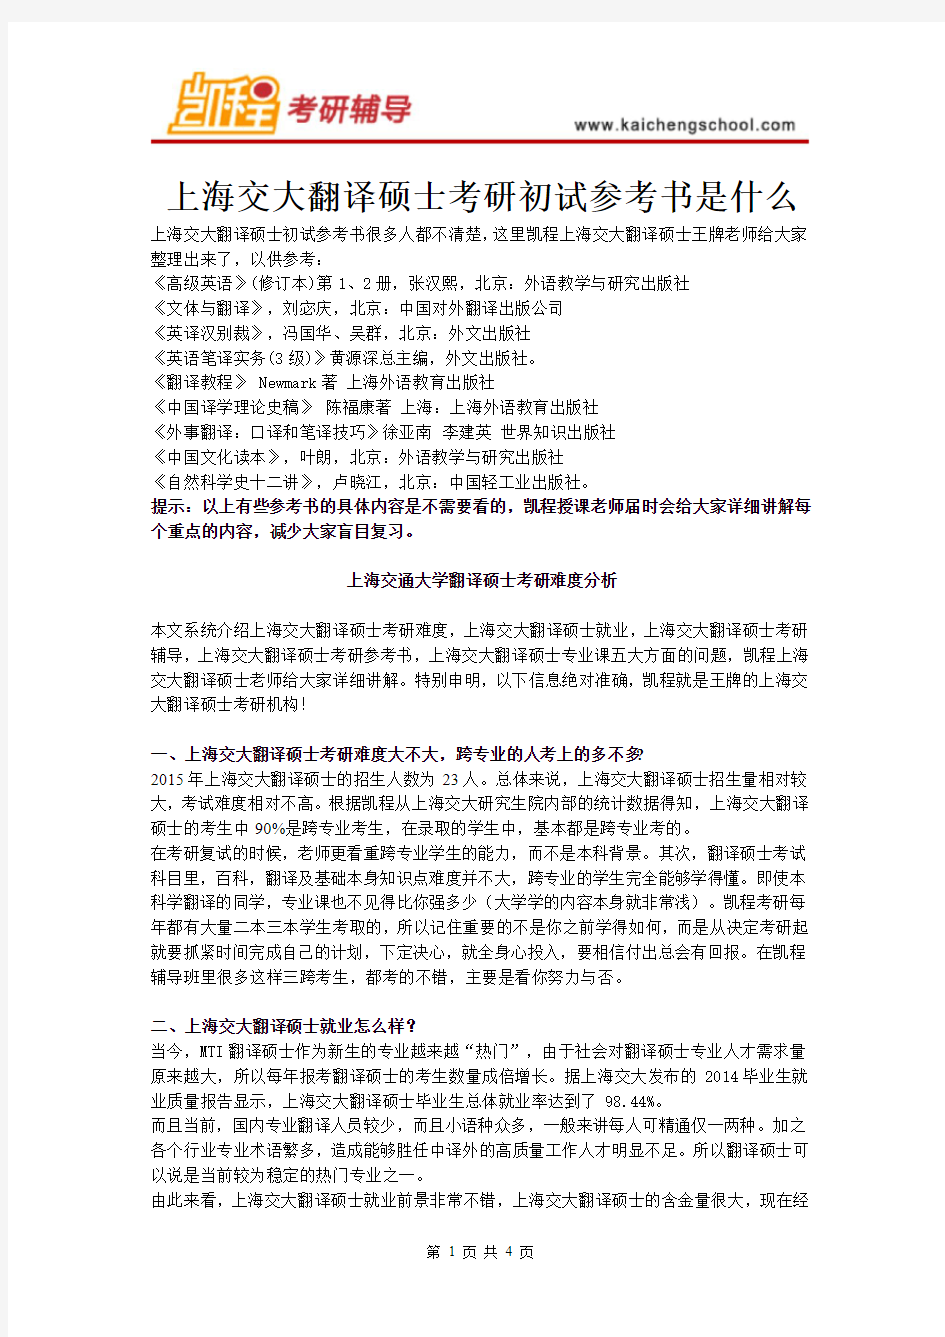 上海交大翻译硕士考研初试参考书是什么